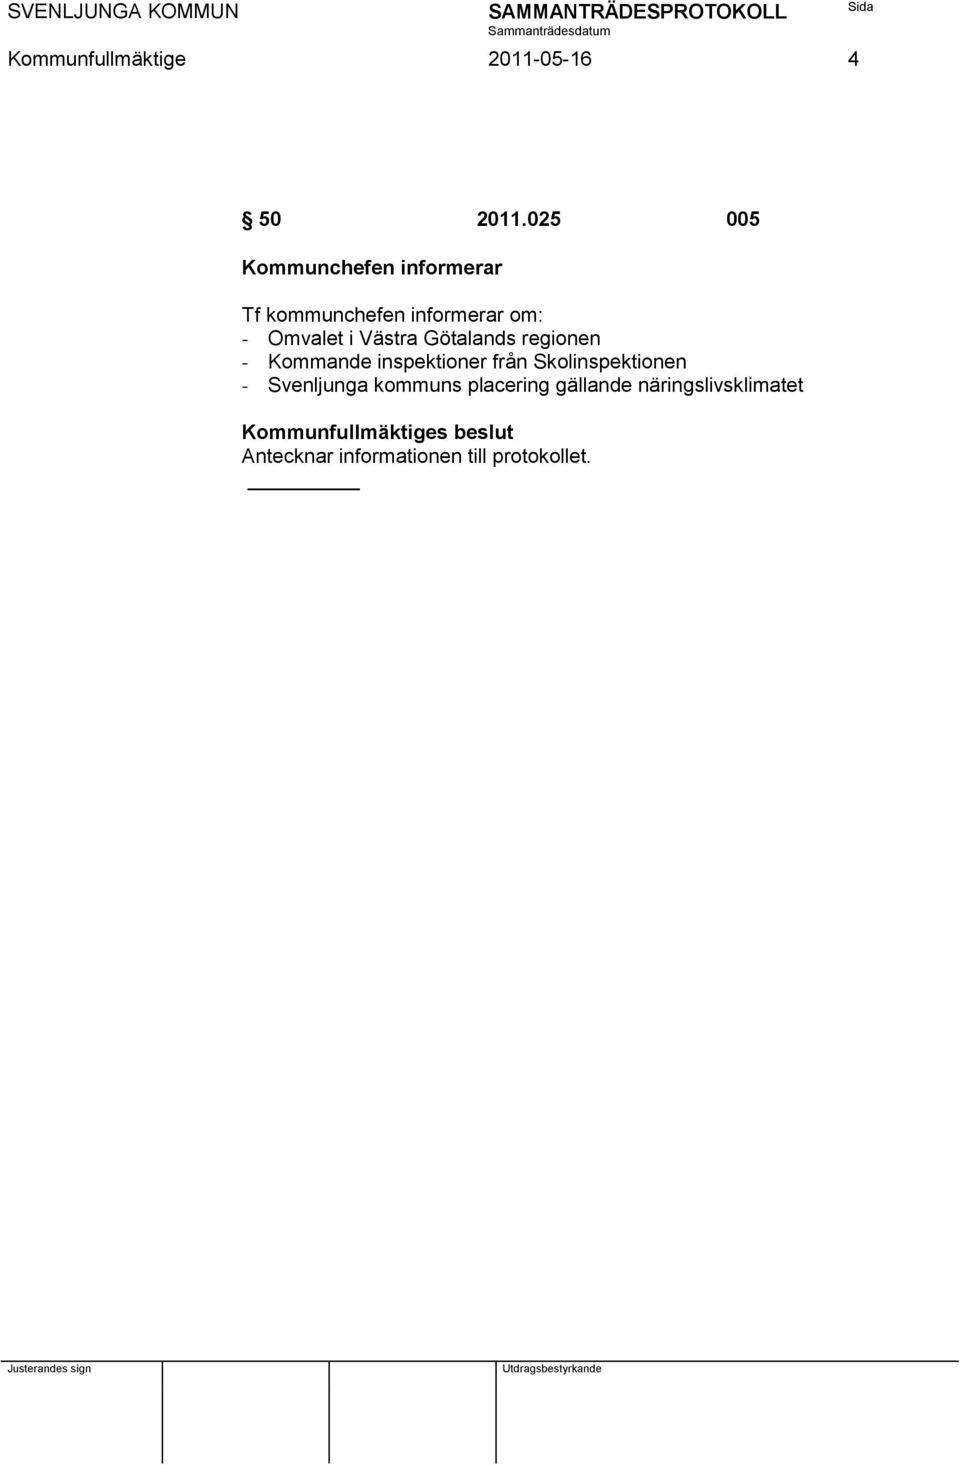 Omvalet i Västra Götalands regionen - Kommande inspektioner från